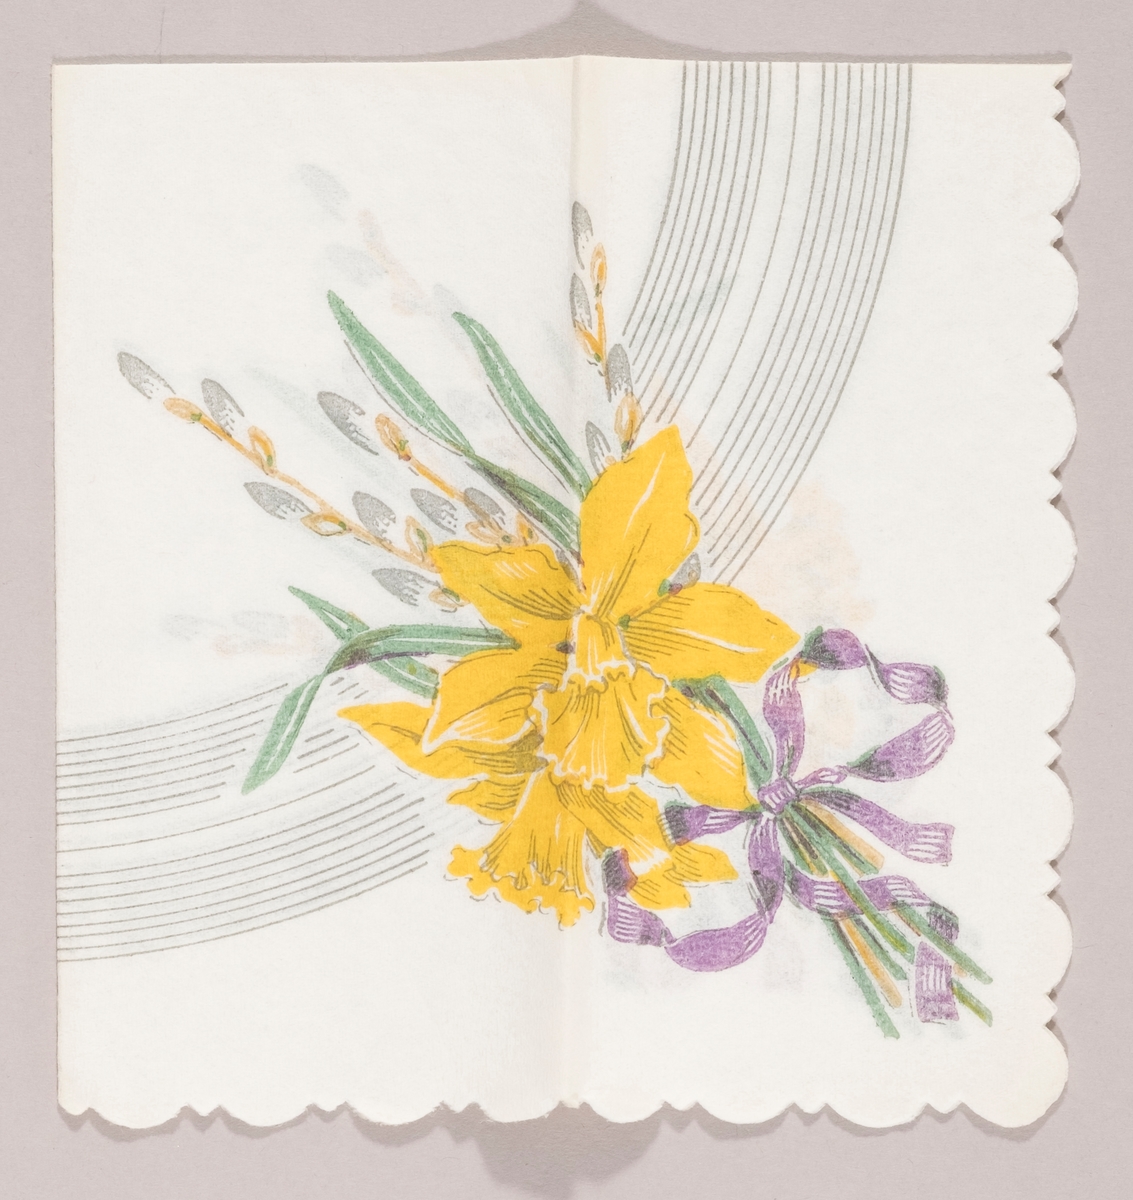 En bukett med påskeliljer og grener med "gåsunger" bundet med en lilla sløyfe. Rundt stripet mønster i bakgrunnen.